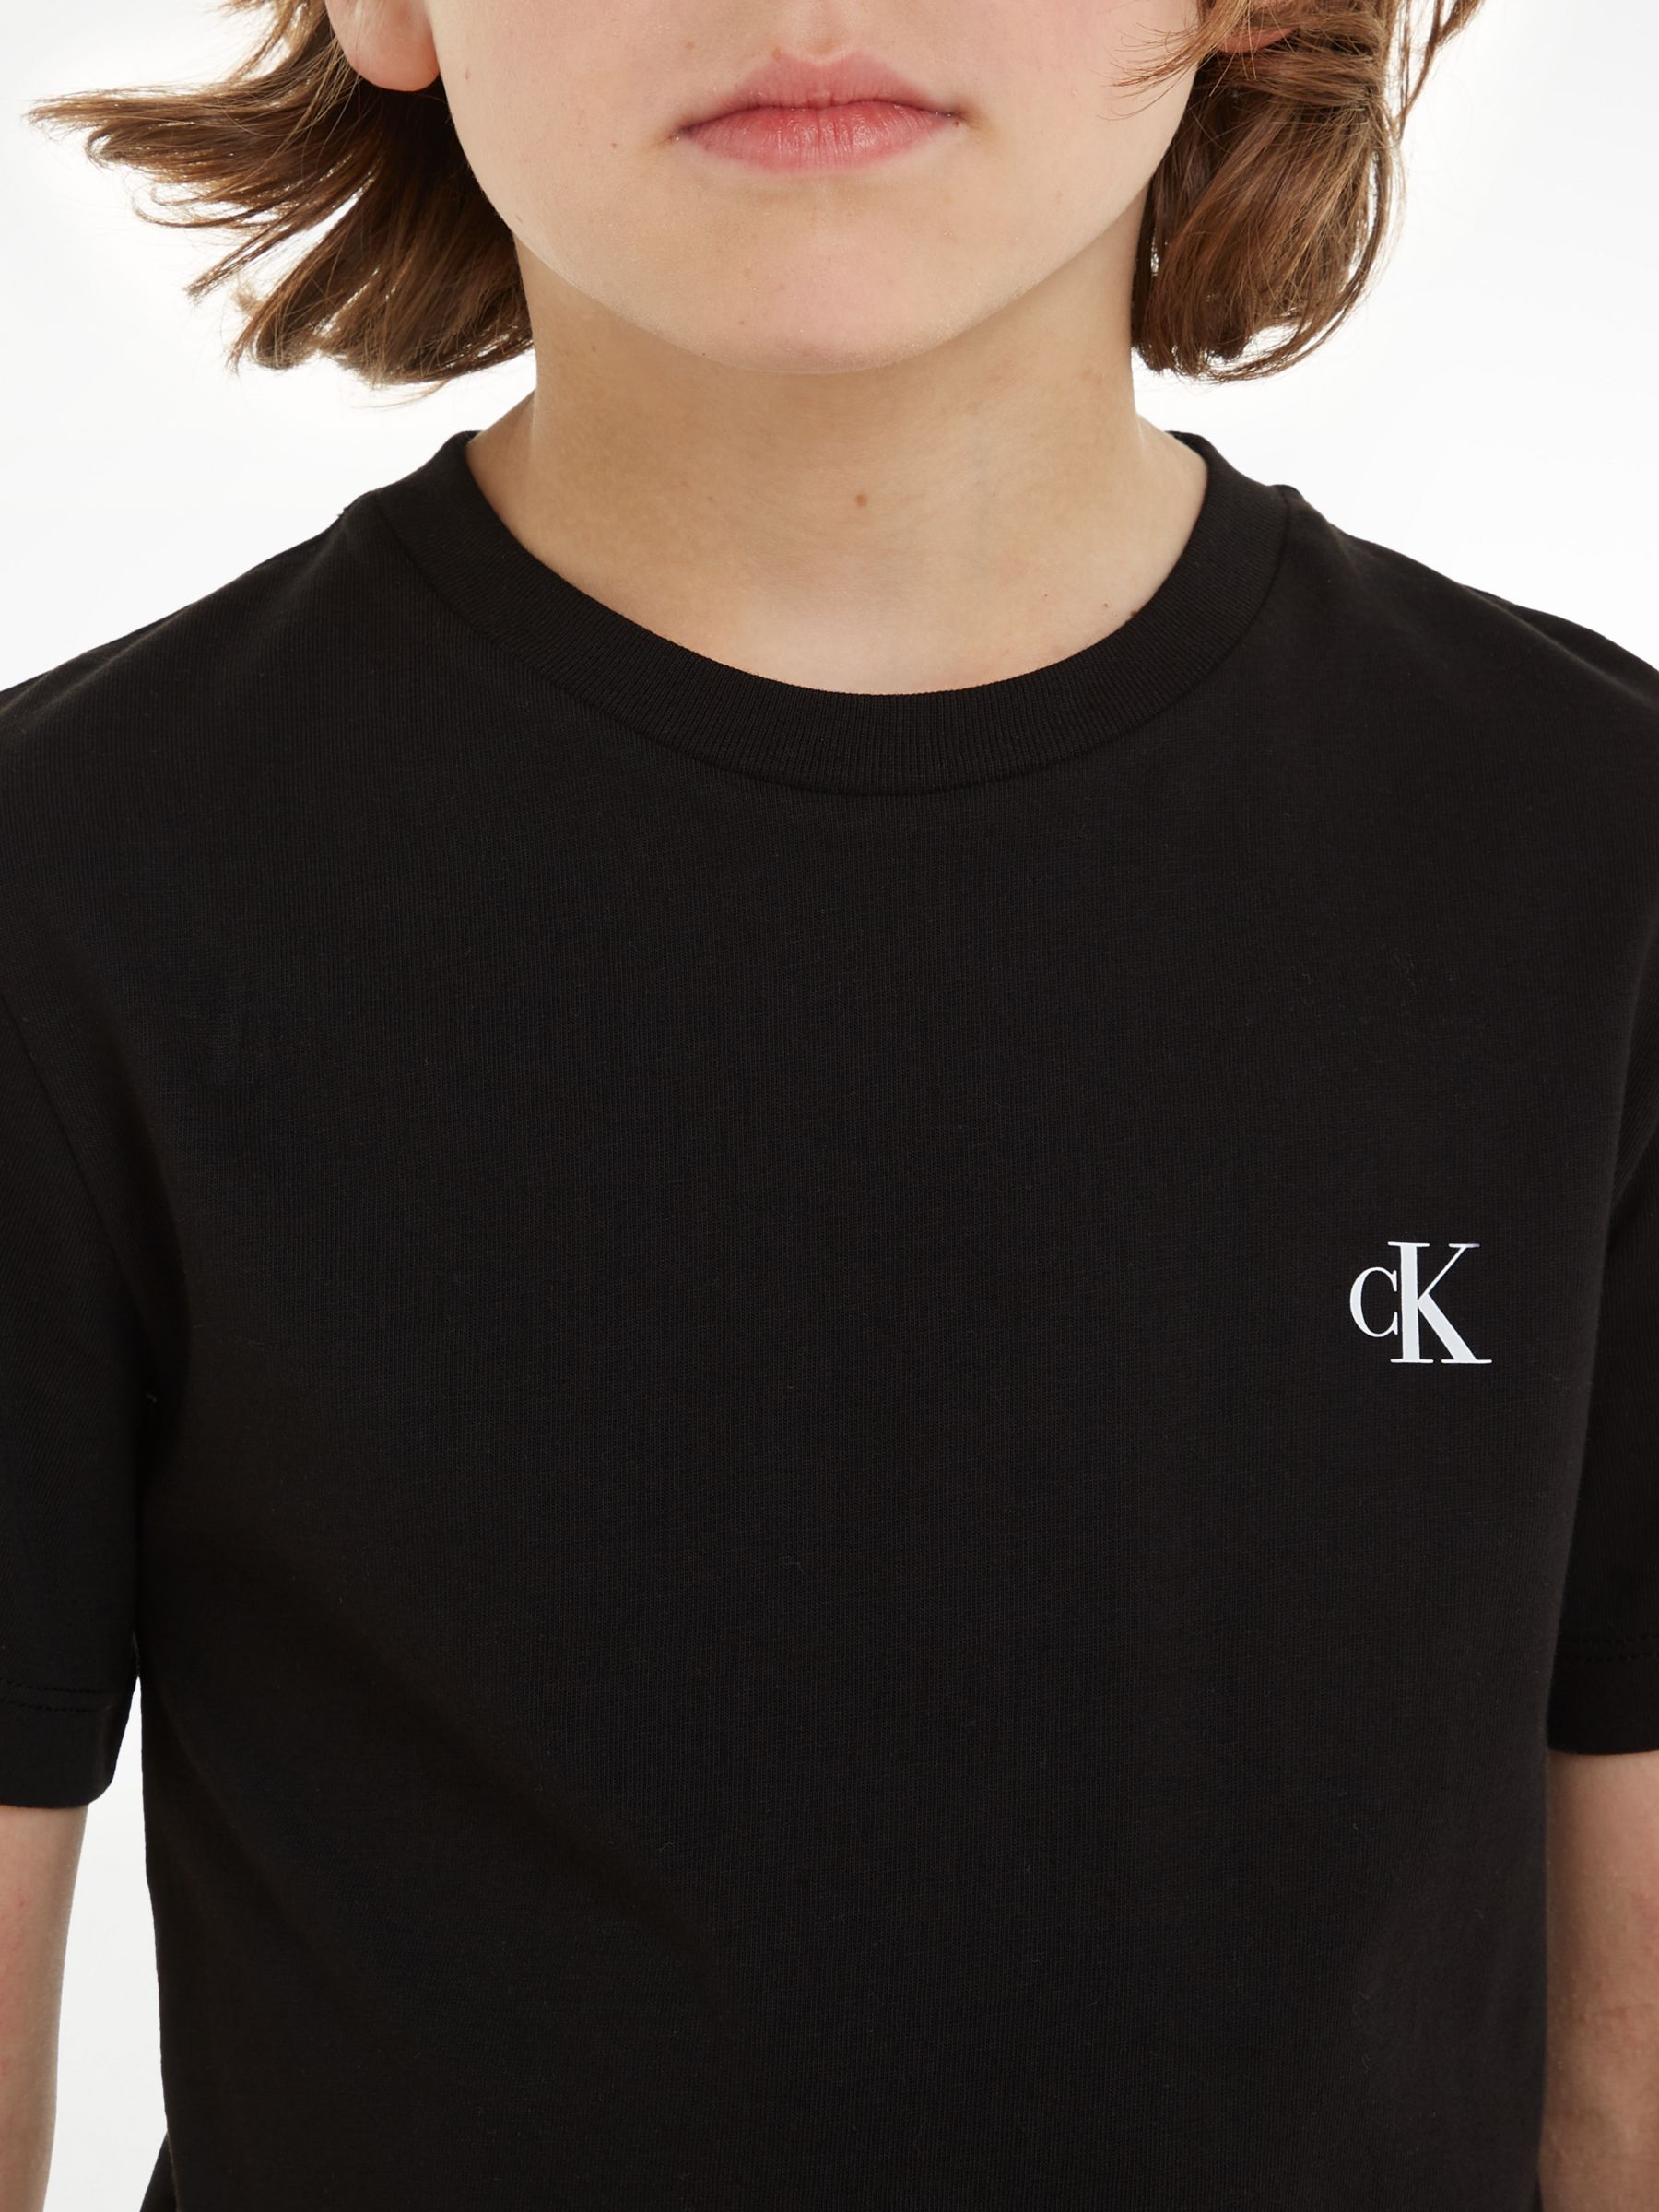 Partners Sleeve John Cotton Blue/Ck Pack Black Short Keepsake of T-Shirts, Klein Calvin & Lewis Monogram Kids\' 2, at